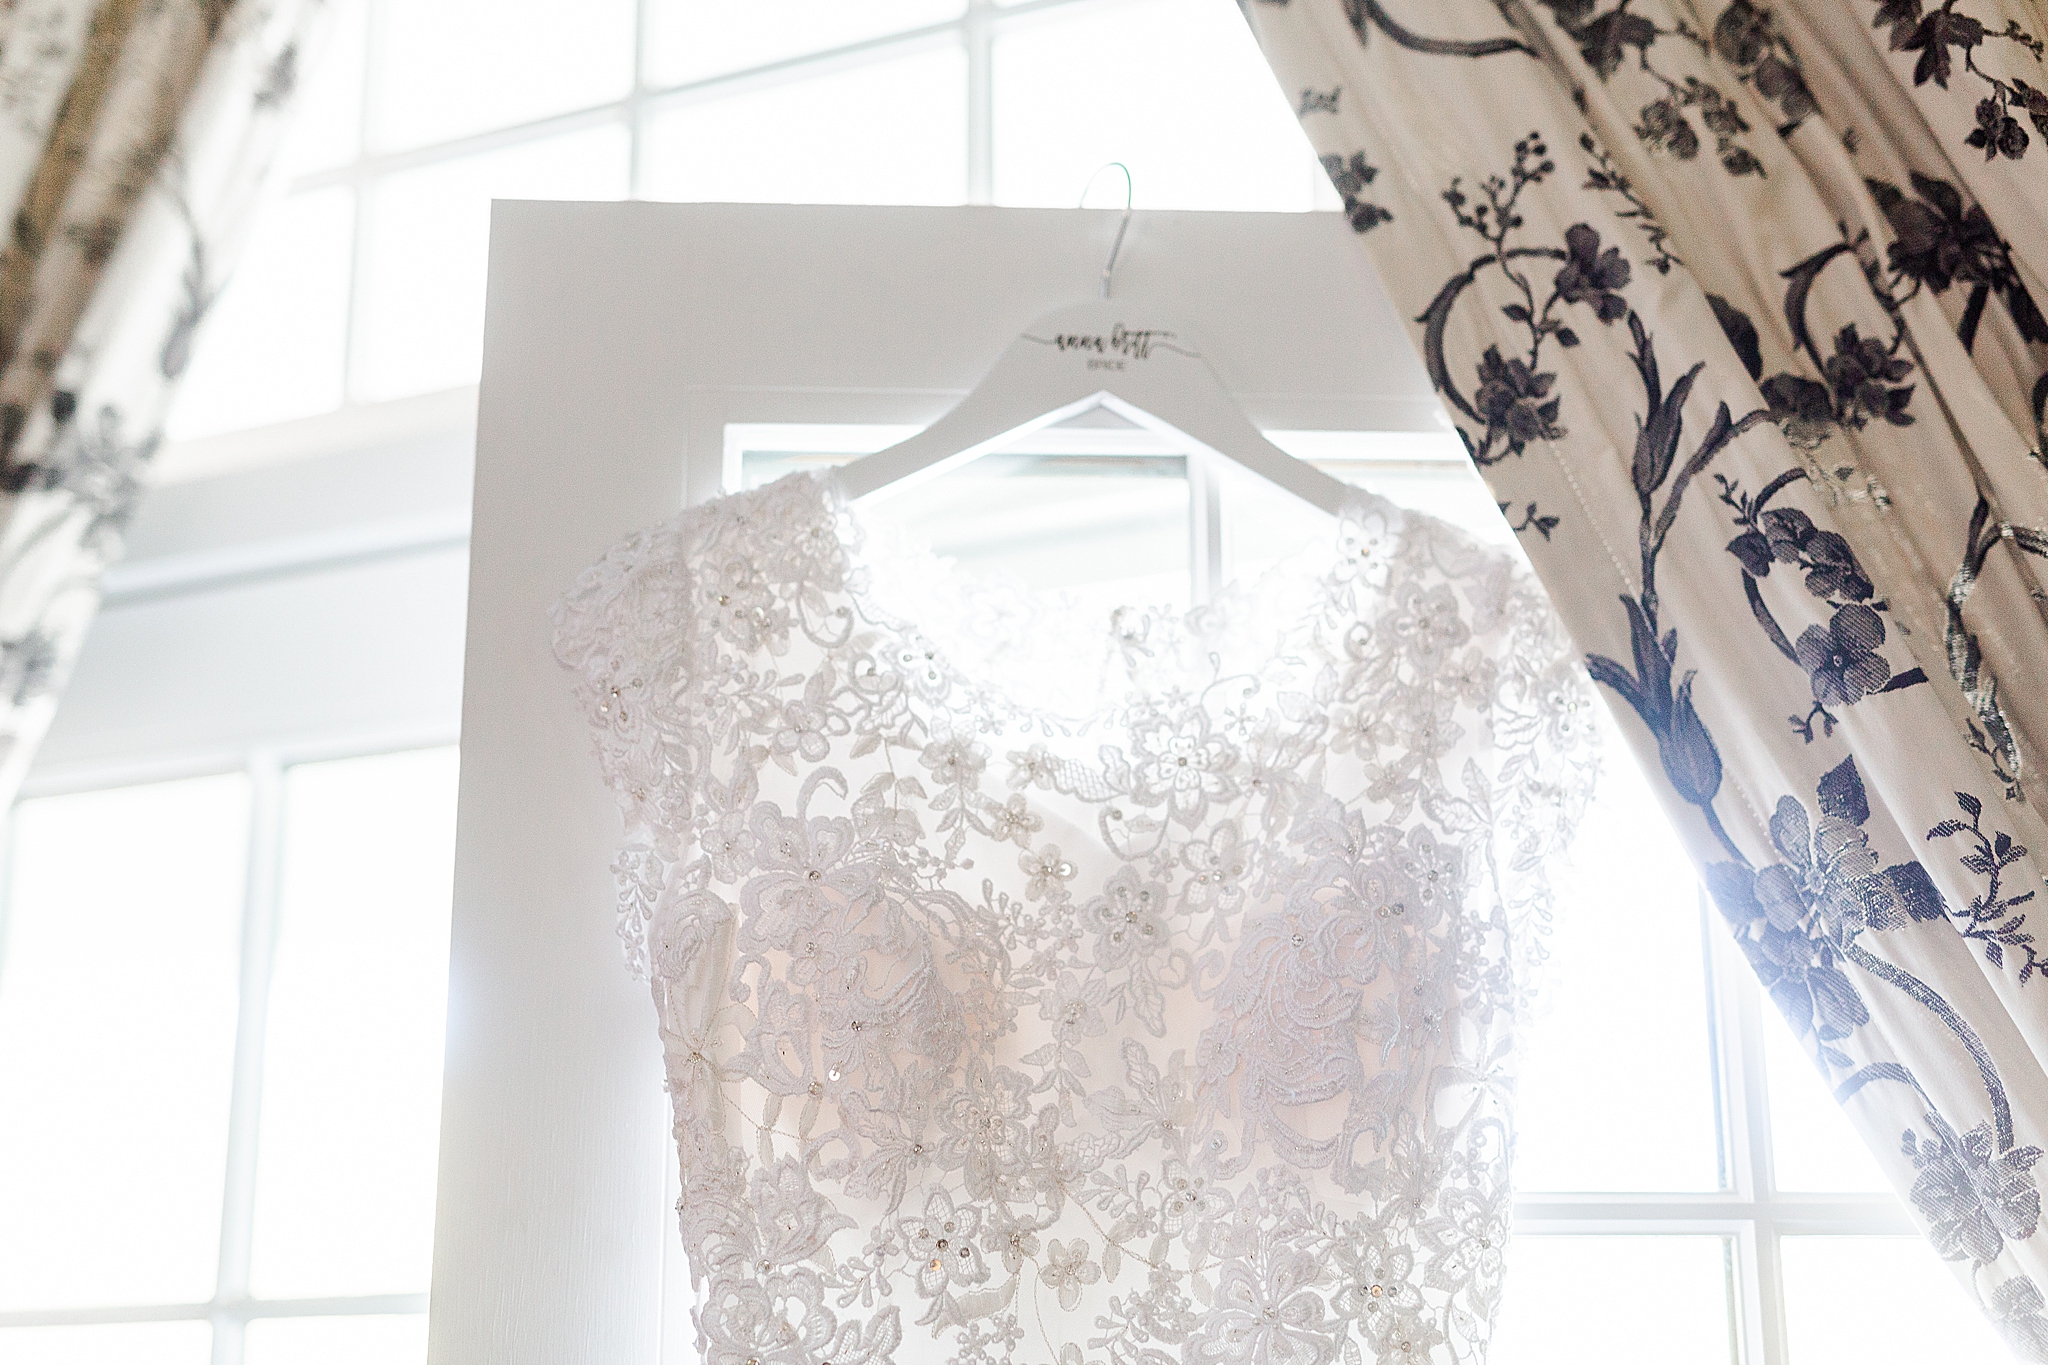 classic wedding gown hangs in window